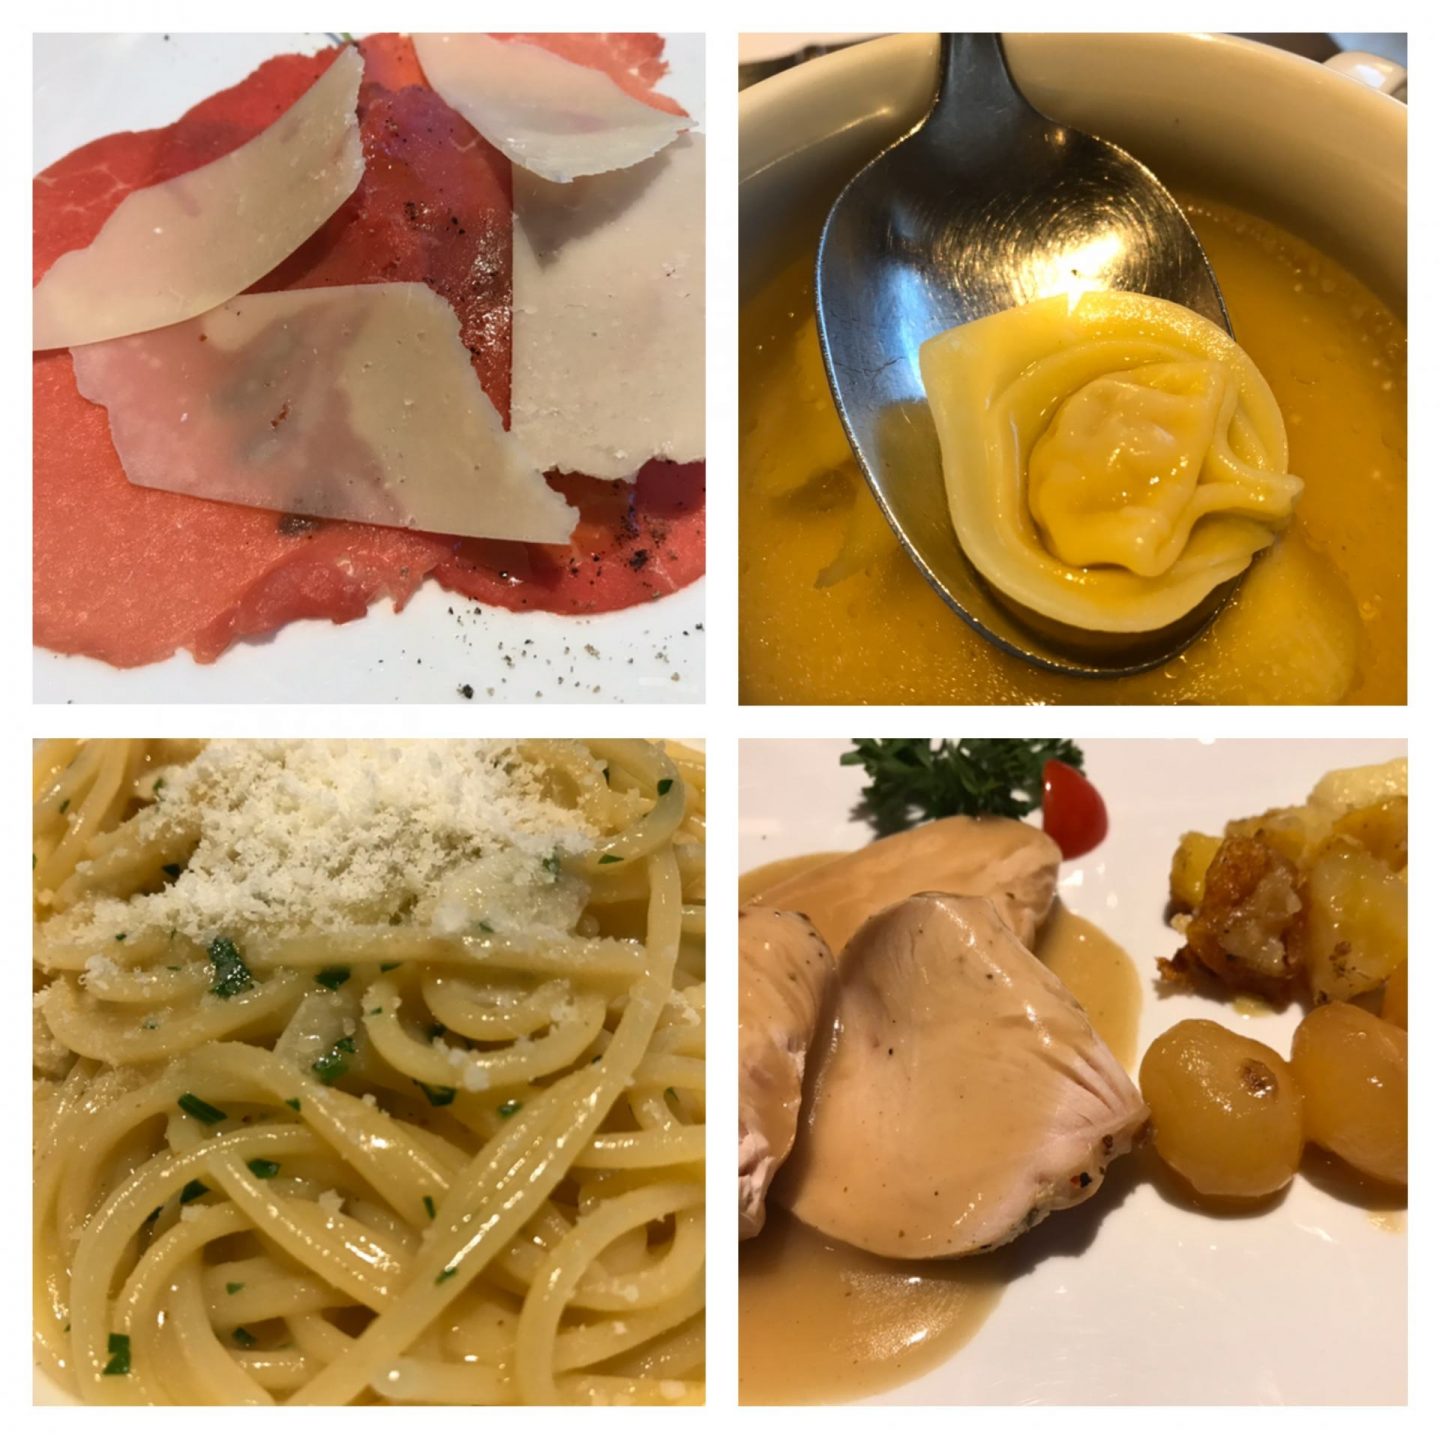 Erfahrung Bewertung Kritik Carpaccio Tortellini Spaghetti Truthahn Hotel Armin Wolkenstein Foodblog Sternestulle